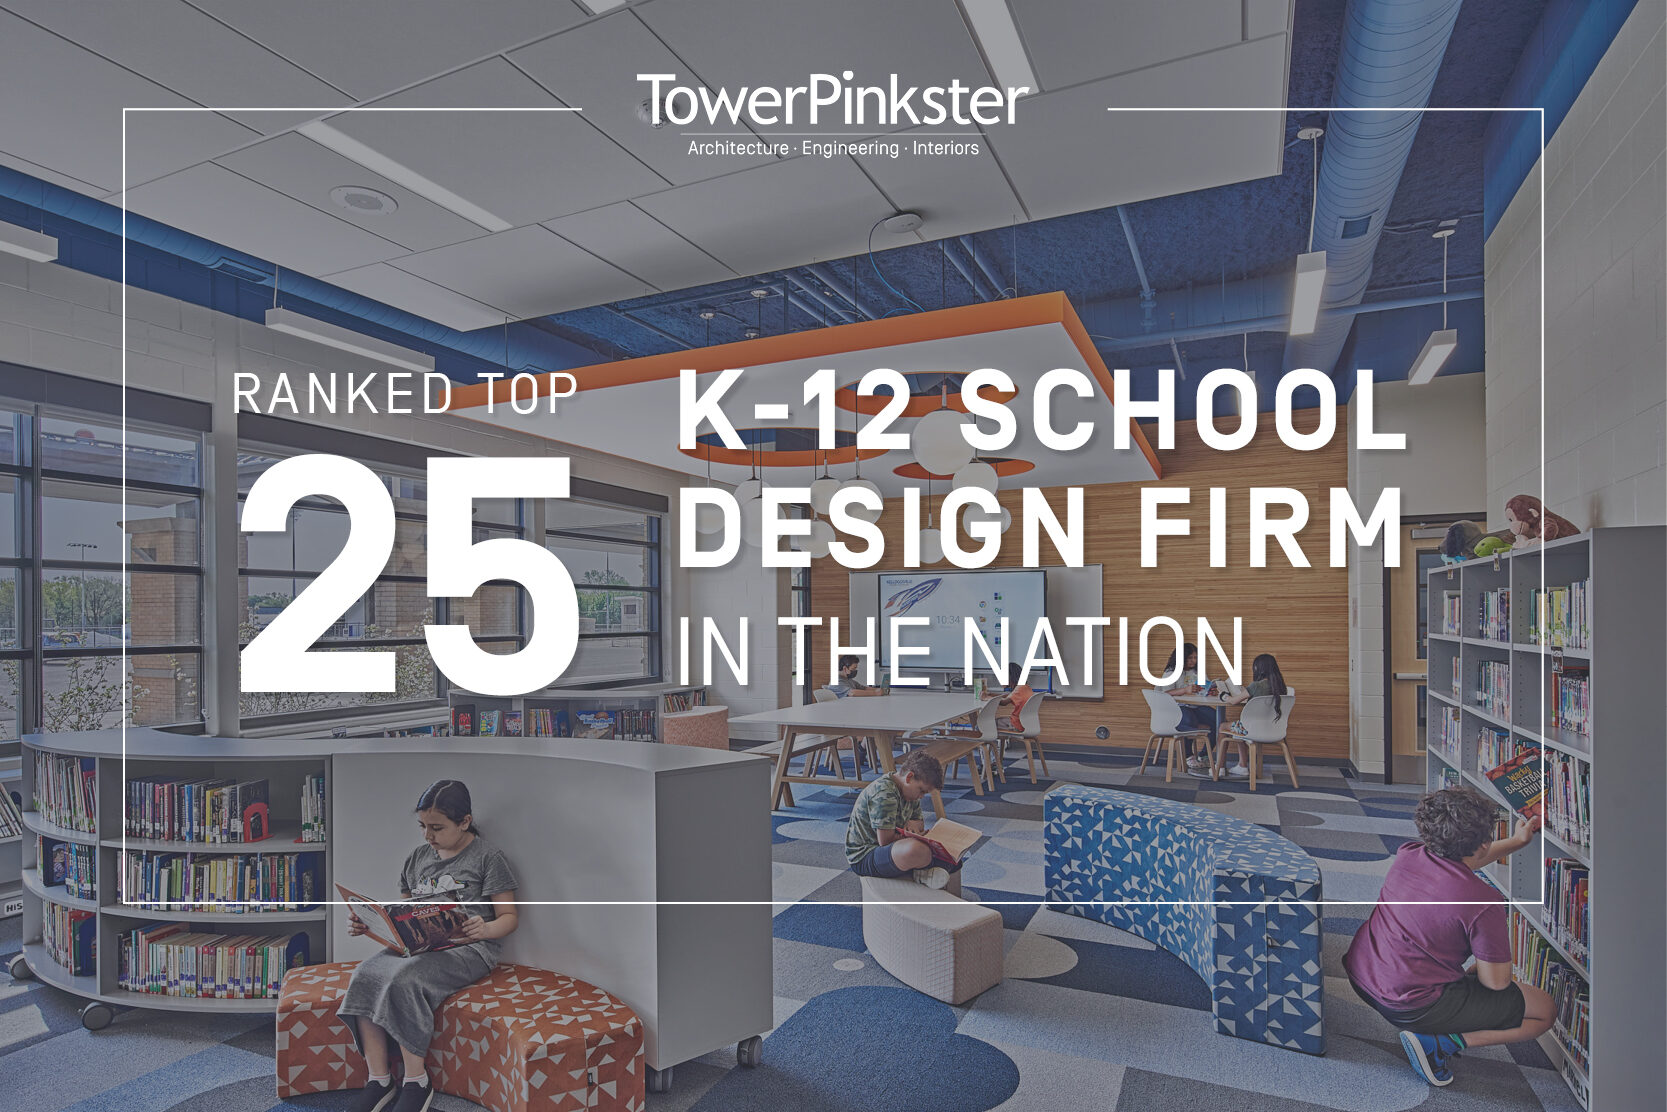 TowerPinkster Earns Top 25 K-12 School Design Firm Ranking